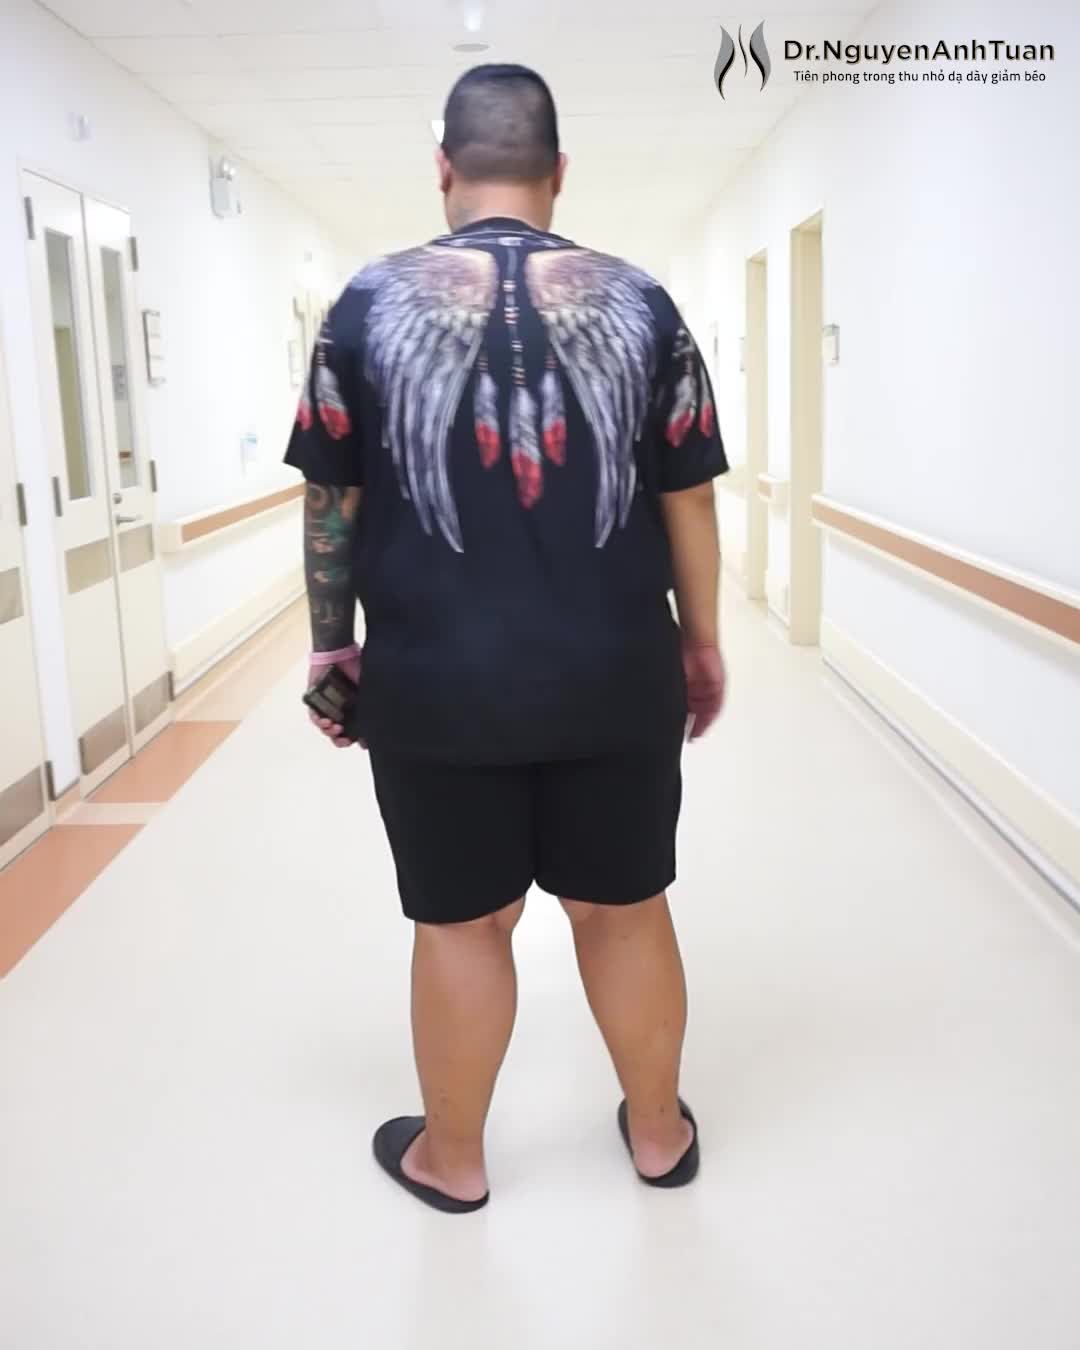 Tăng cân mất kiểm soát trong nhiều năm sinh sống ở nước ngoài, bệnh nhân Trung (153kg) hoang mang không tìm được giải pháp để thoát béo.